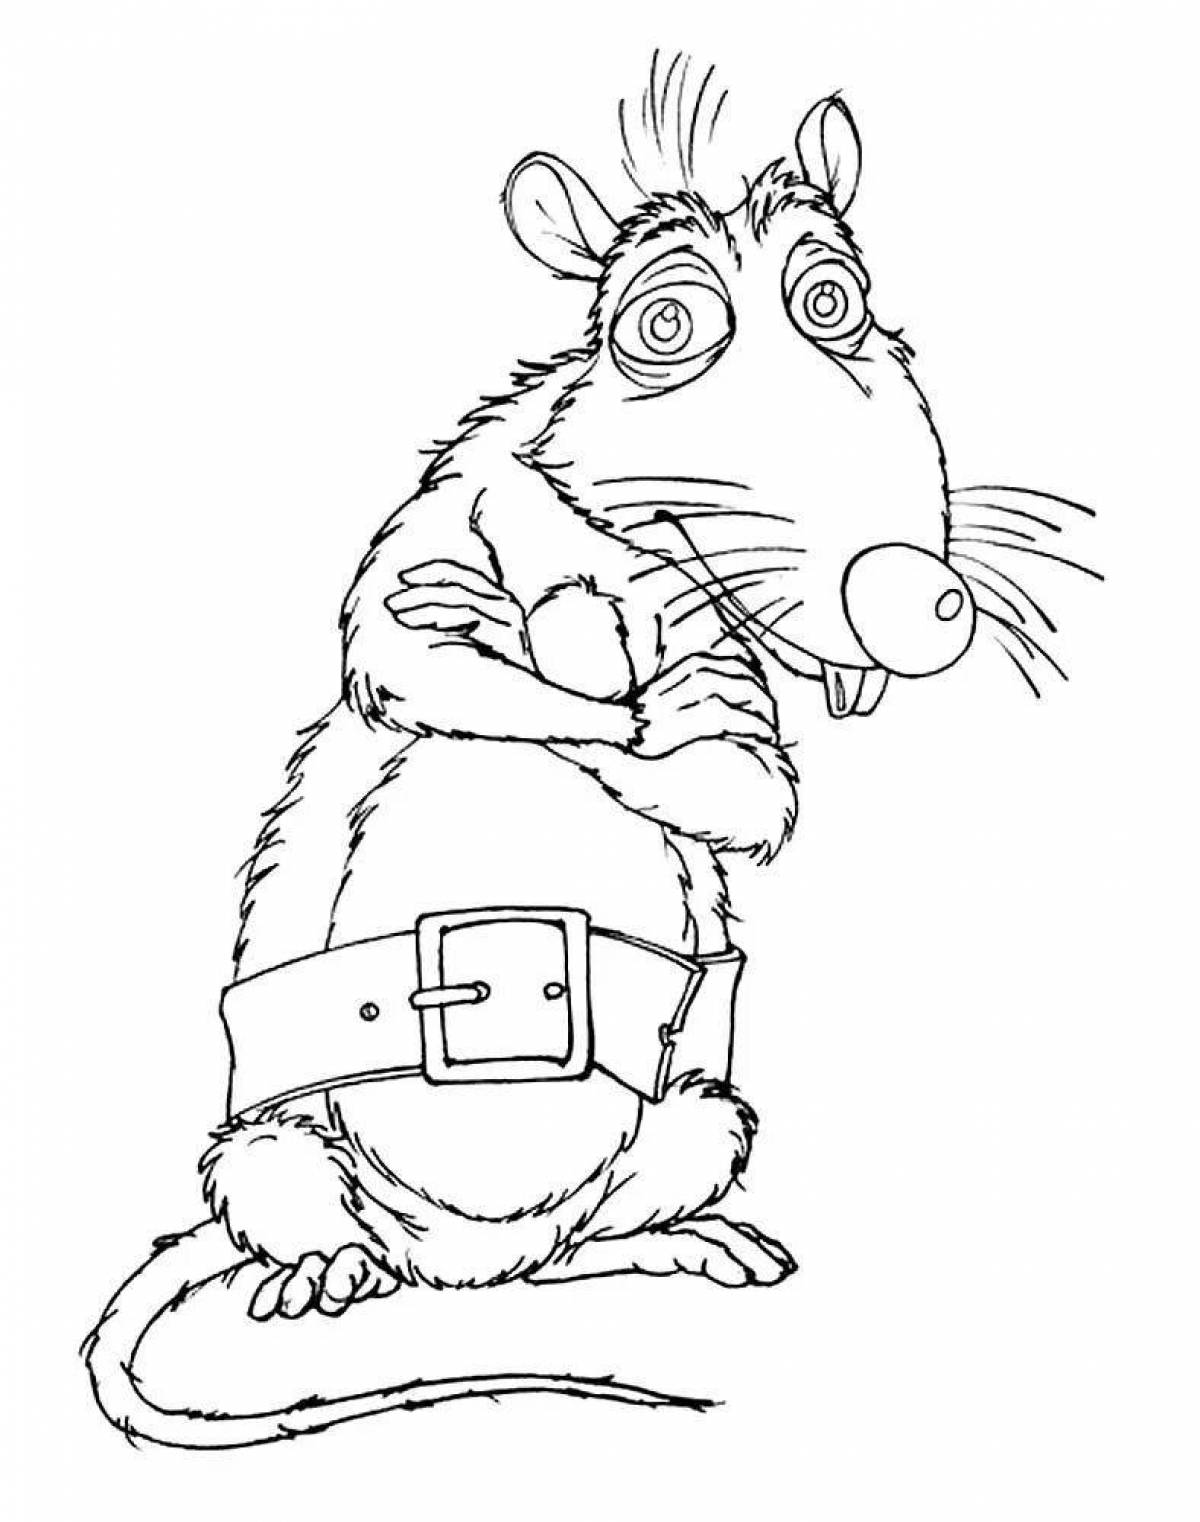 Развлекательная крыса лариска раскраска